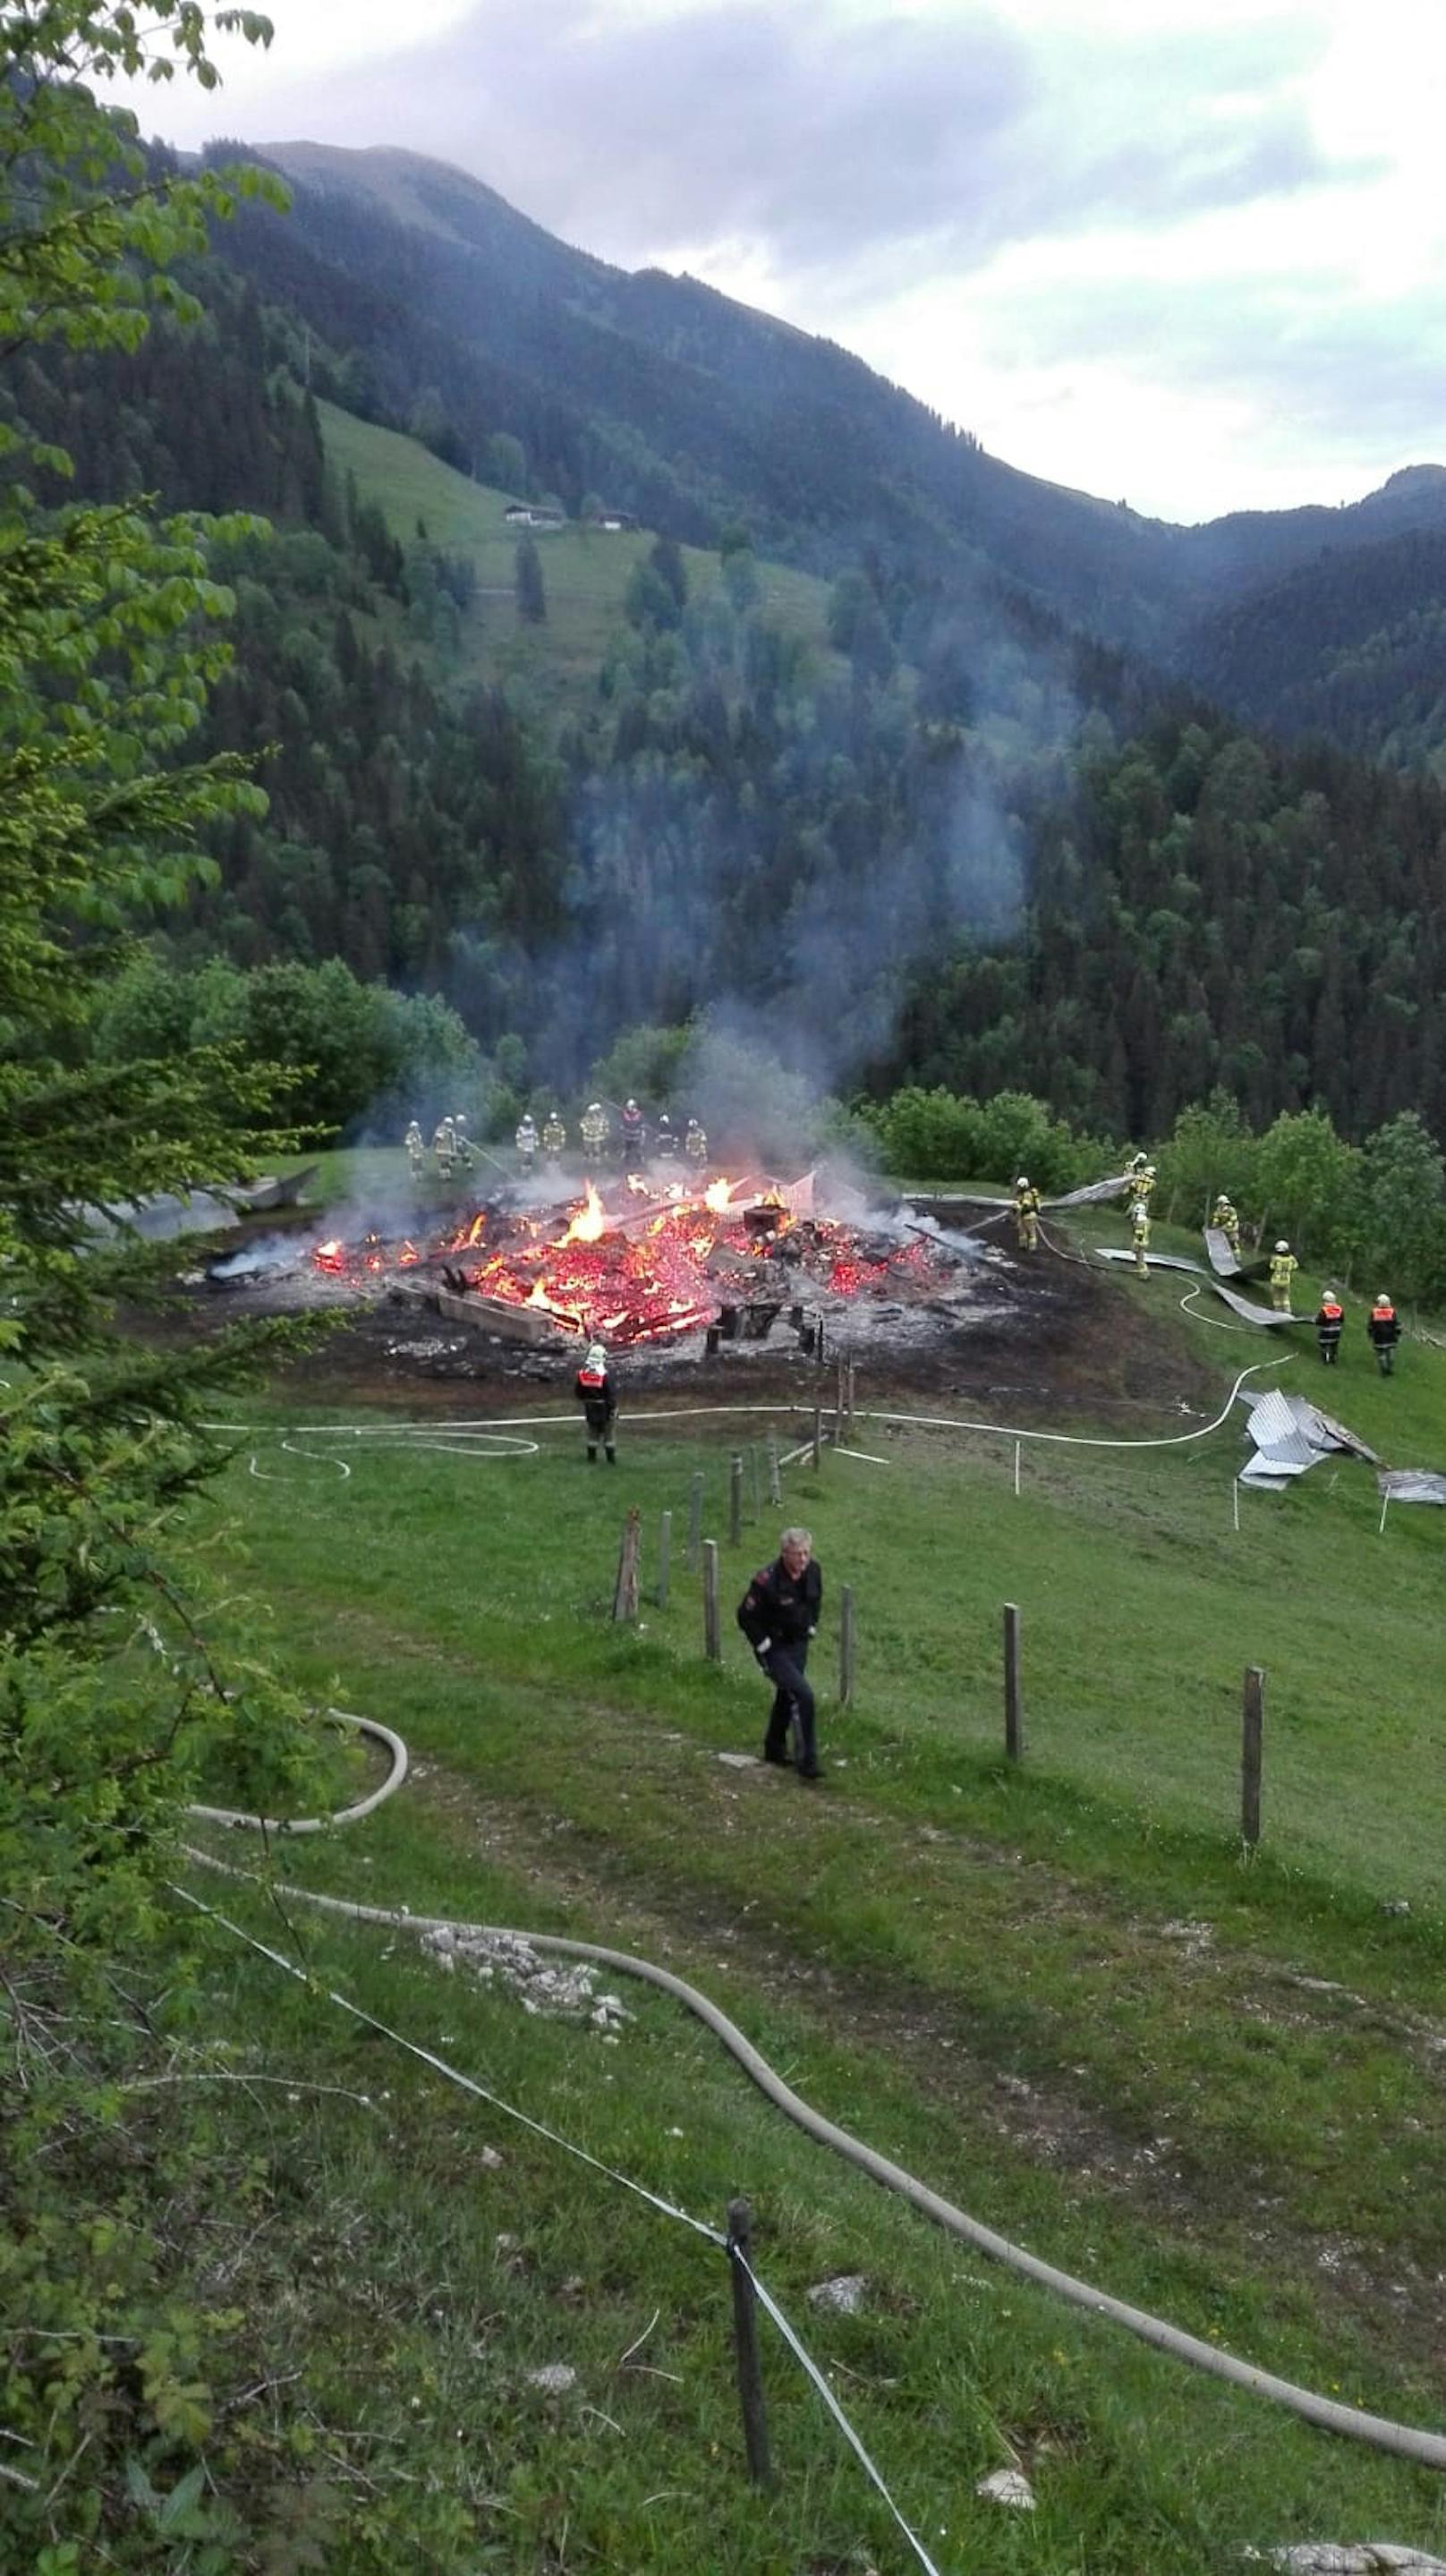 Beim Eintreffen der alarmierten Feuerwehren von Brandenberg und Aschau am entlegenen, bereits nahe der deutschen Staatsgrenze im alpinen Bereich befindlichen Objekt war die Almhütte bereits fast vollständig abgebrannt.